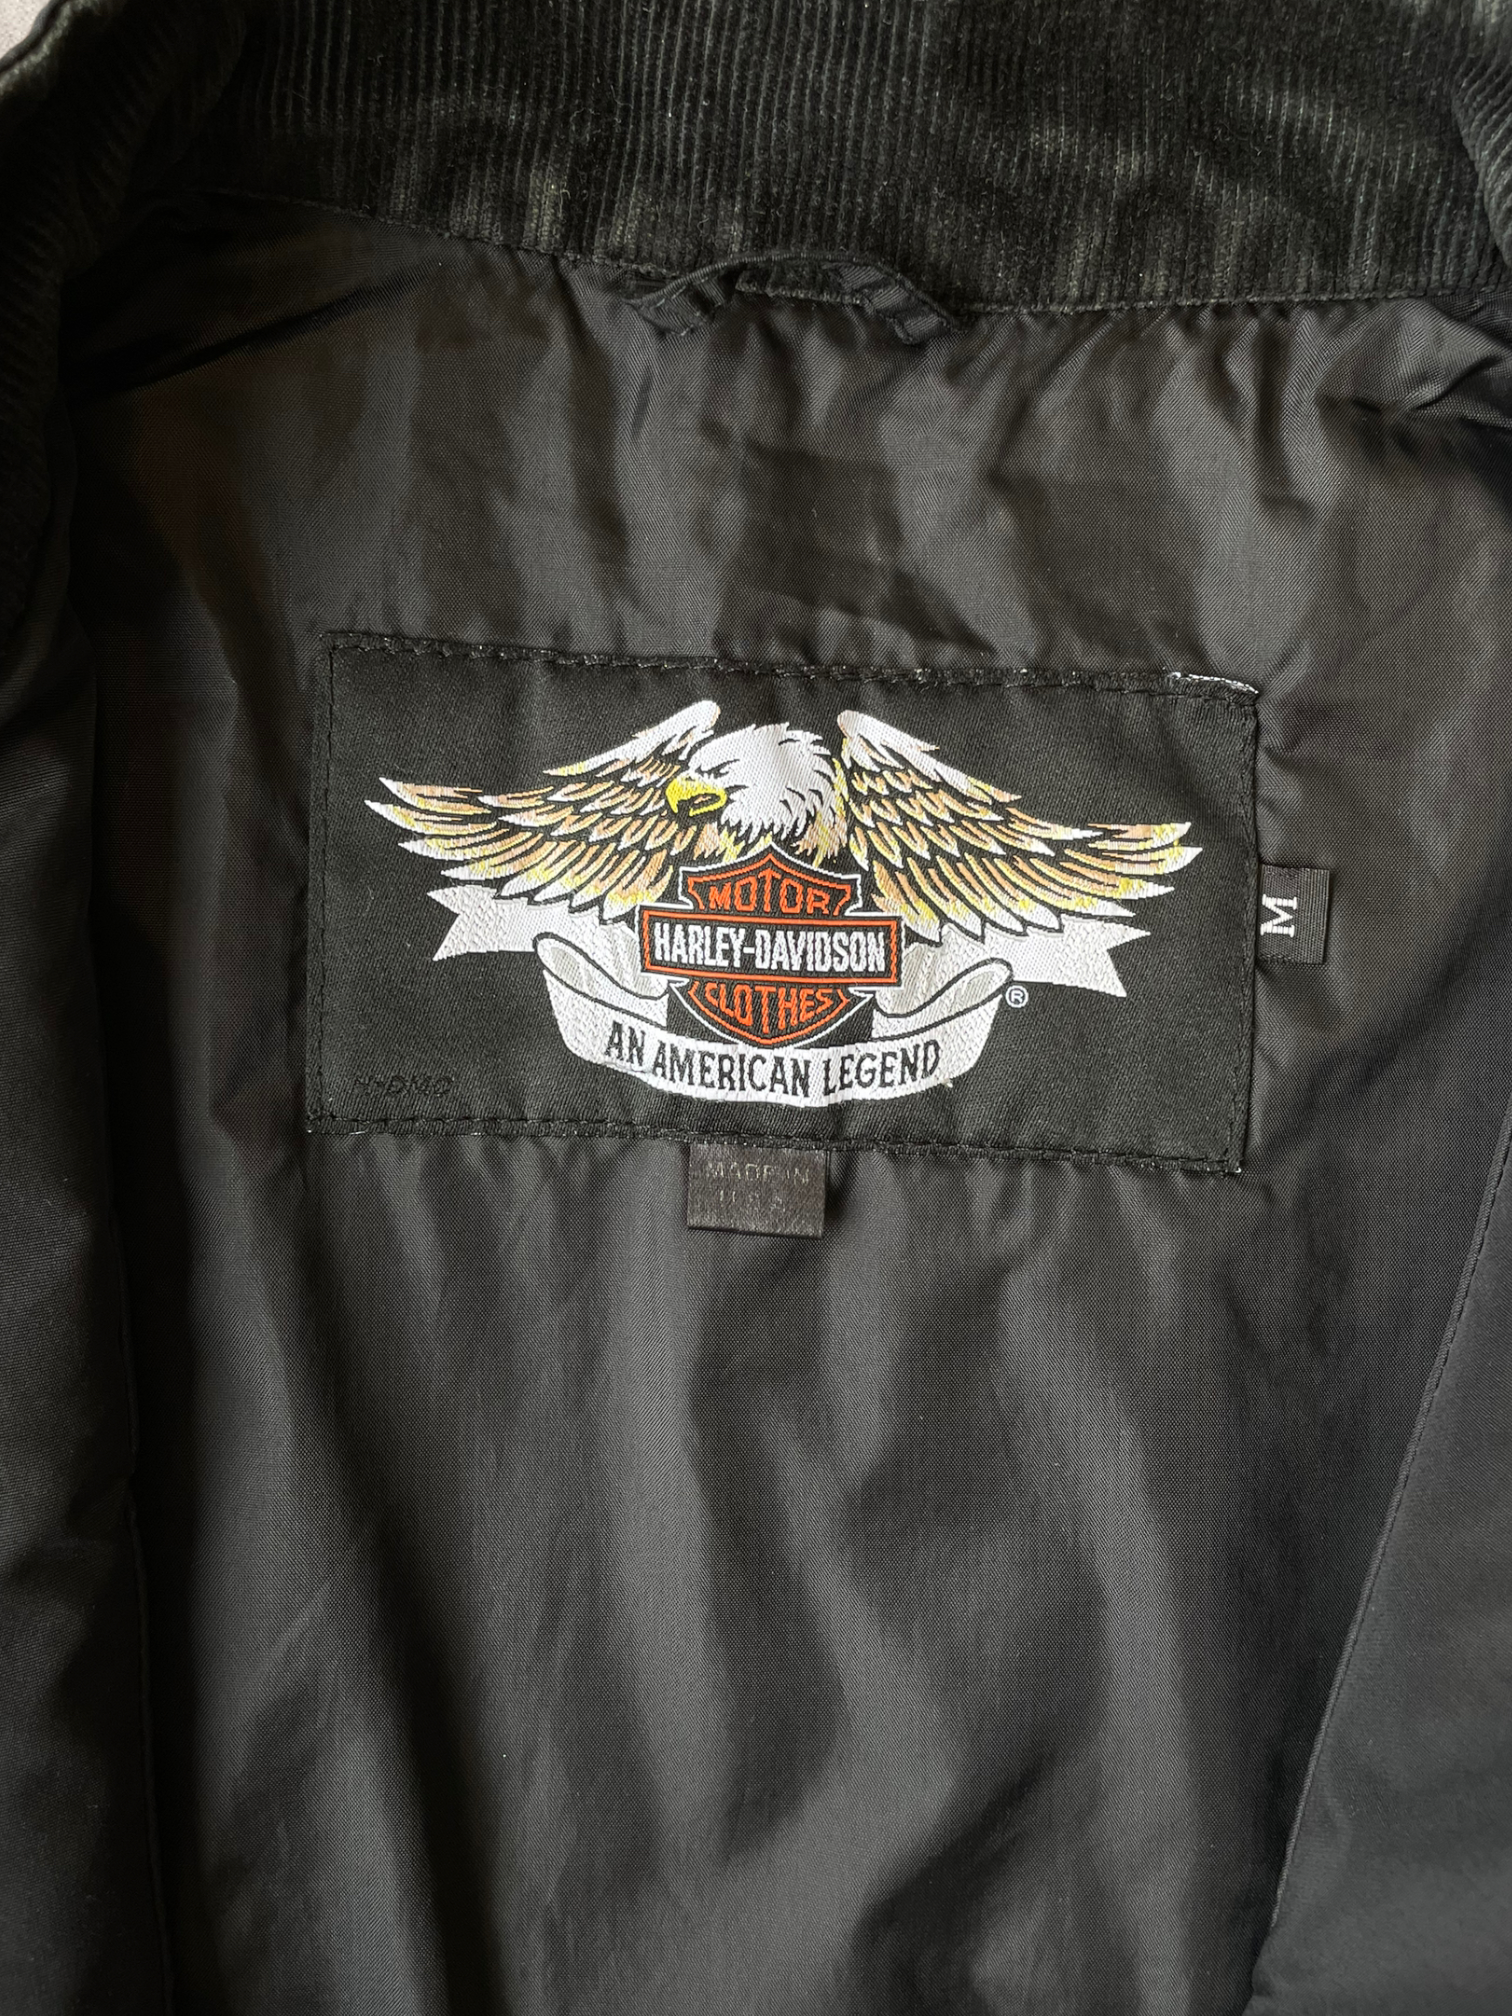 Vintage Harley Davidson Moto Racing Jacket - Medium/Large